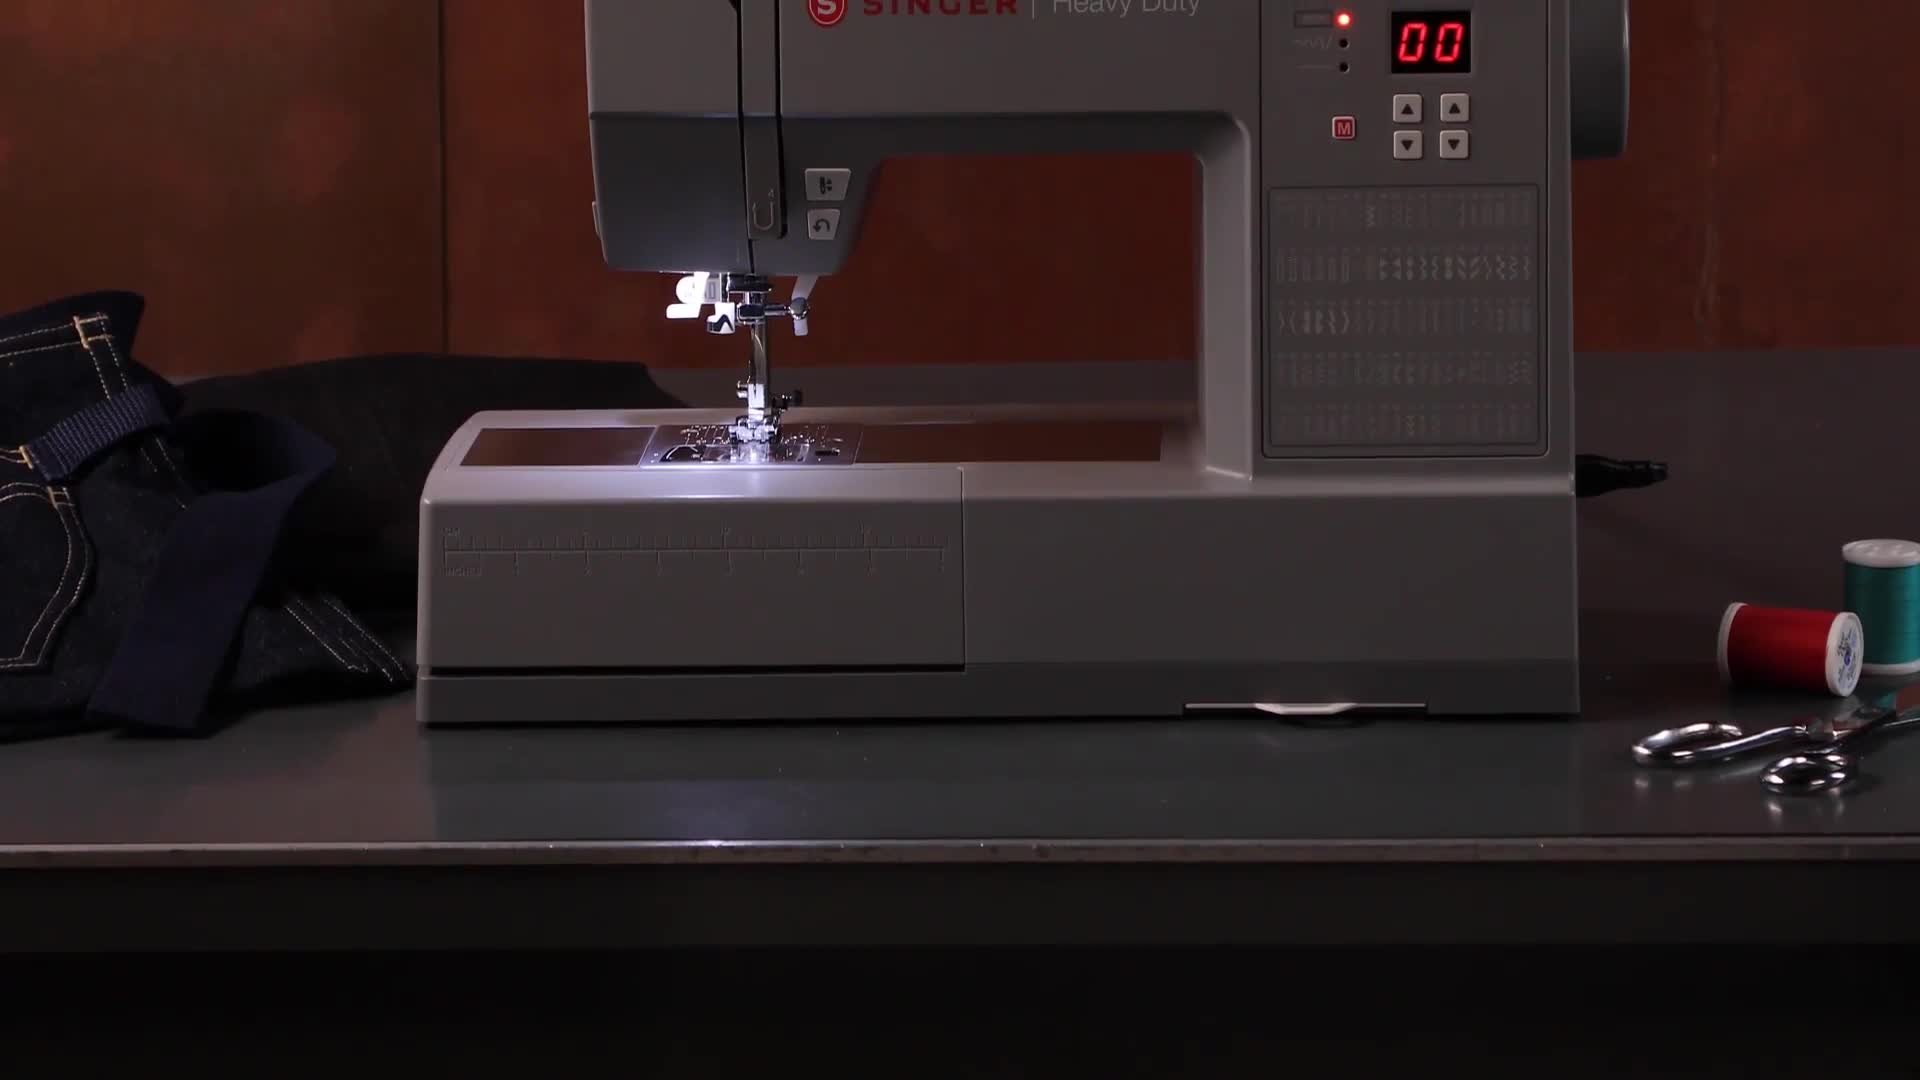 Heavy Duty HD6805C Digital Sewing Machine : SINGER®